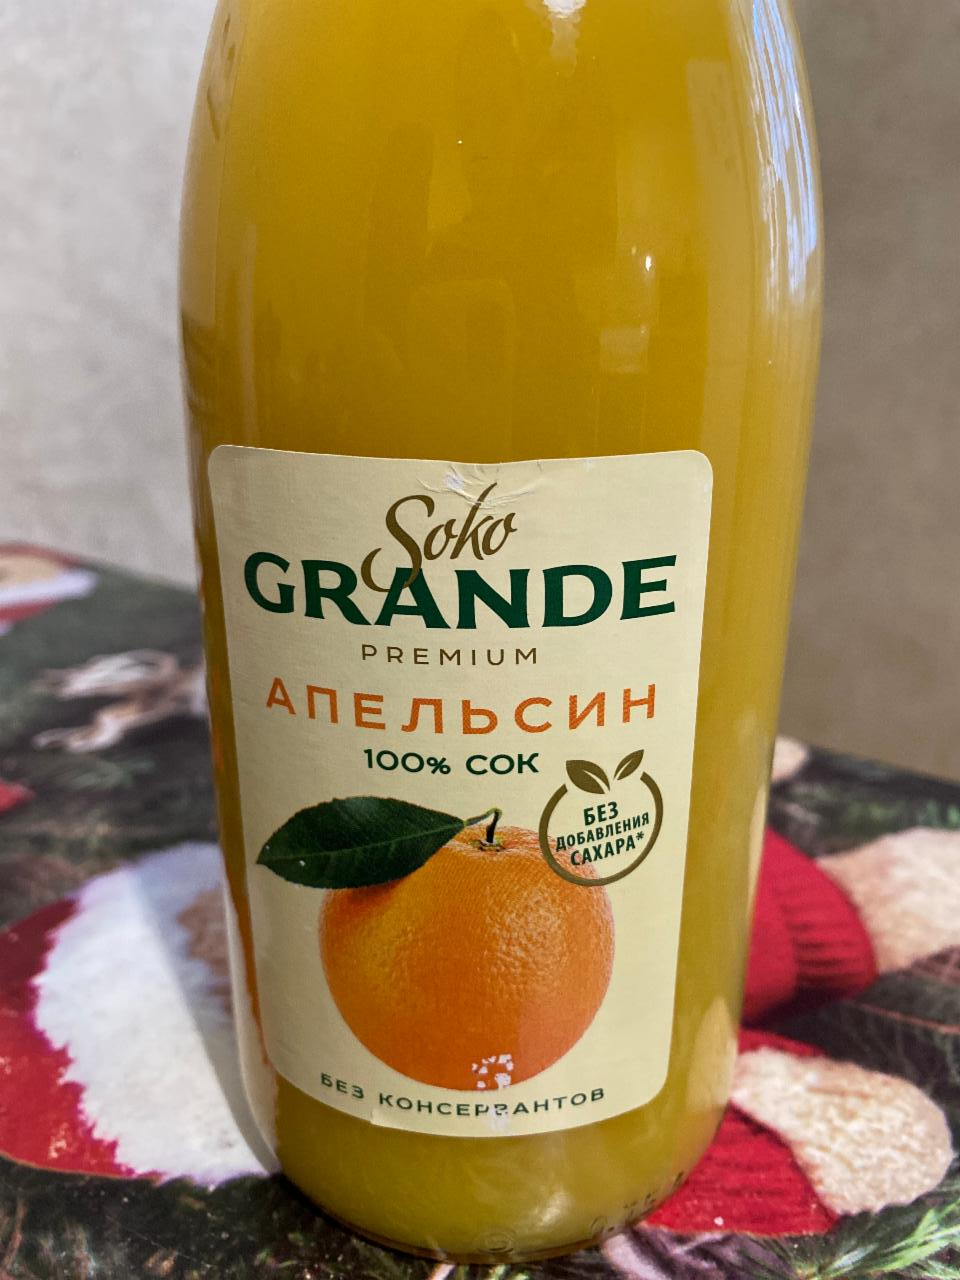 Фото - апельсиновый сок Soko Grande